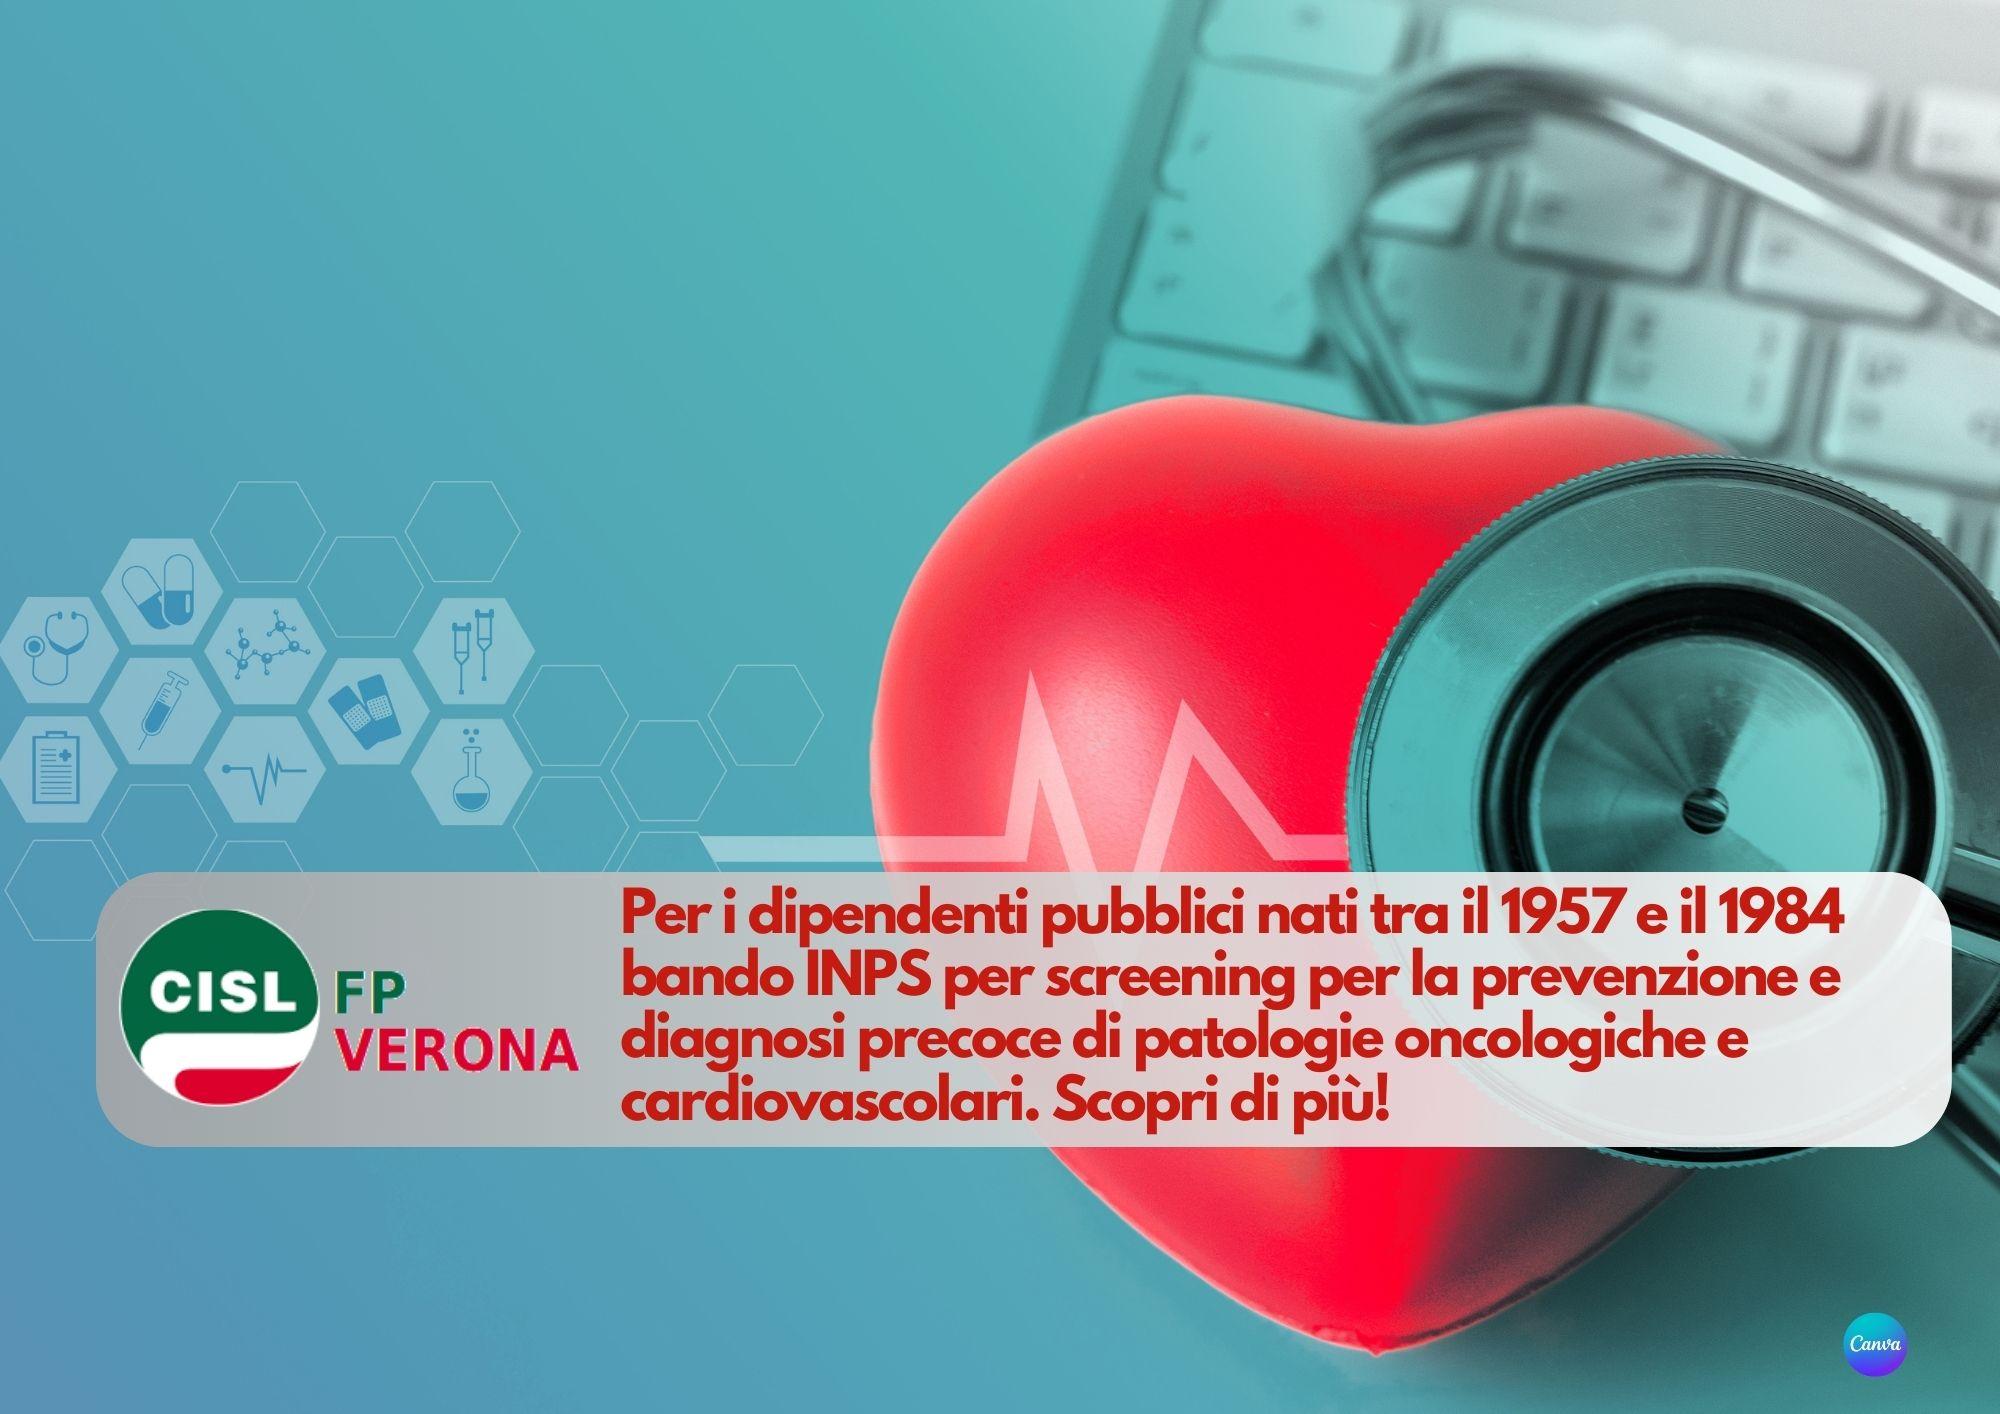 CISL FP Verona. Pubblico impiego: bando INPS screening patologie oncologiche e cardiovascolari